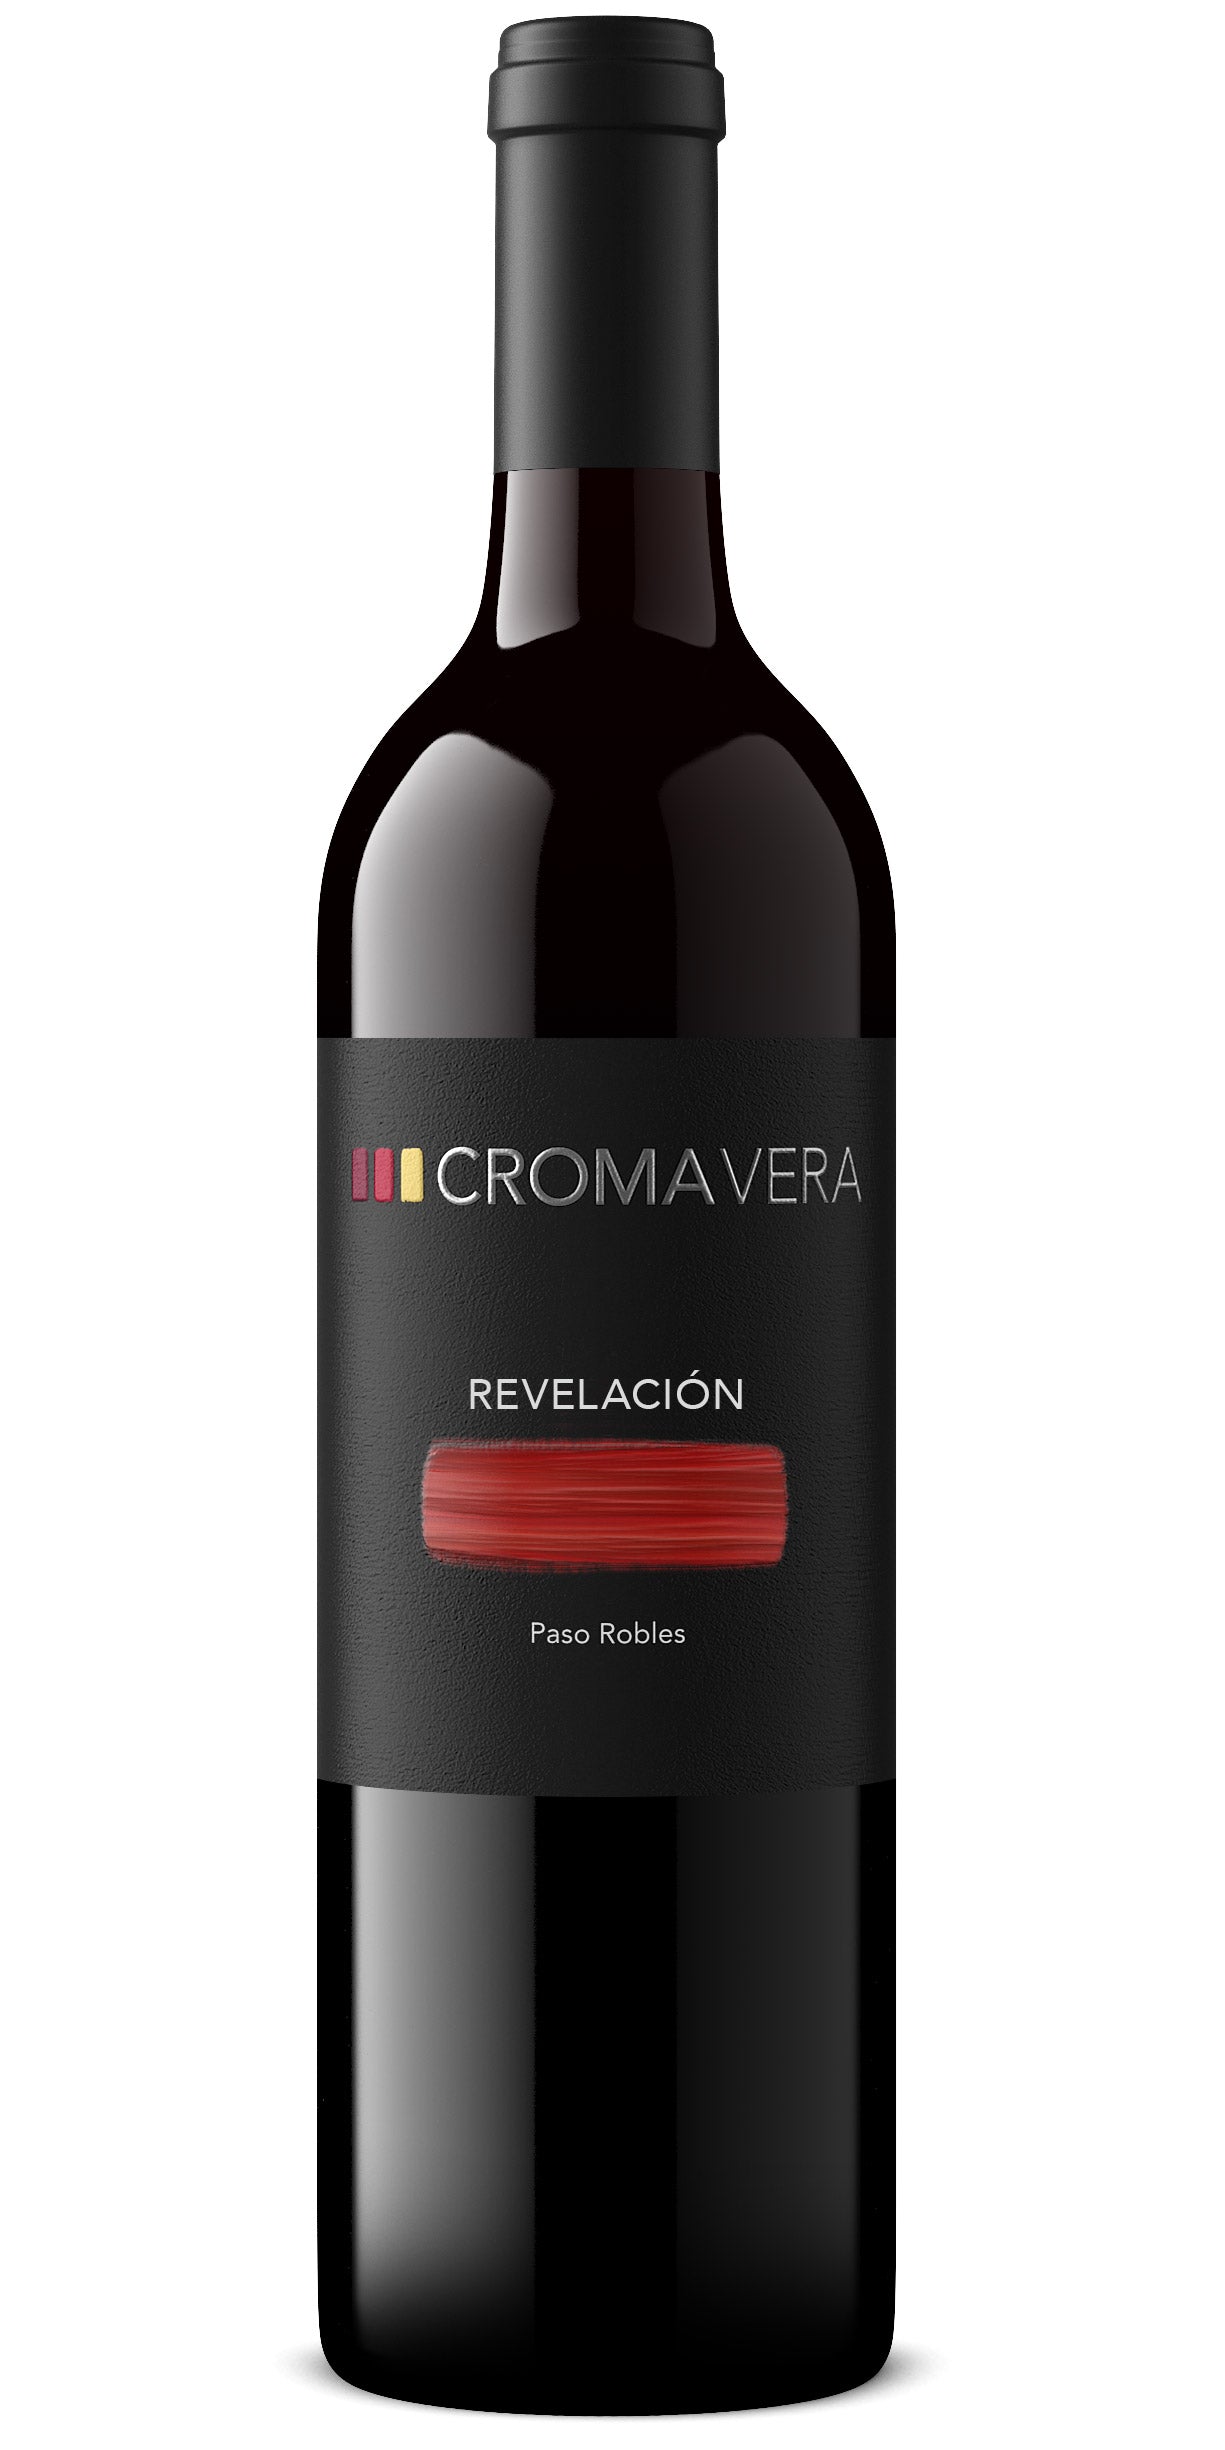 A bottle of Croma Vera Revelación red blend